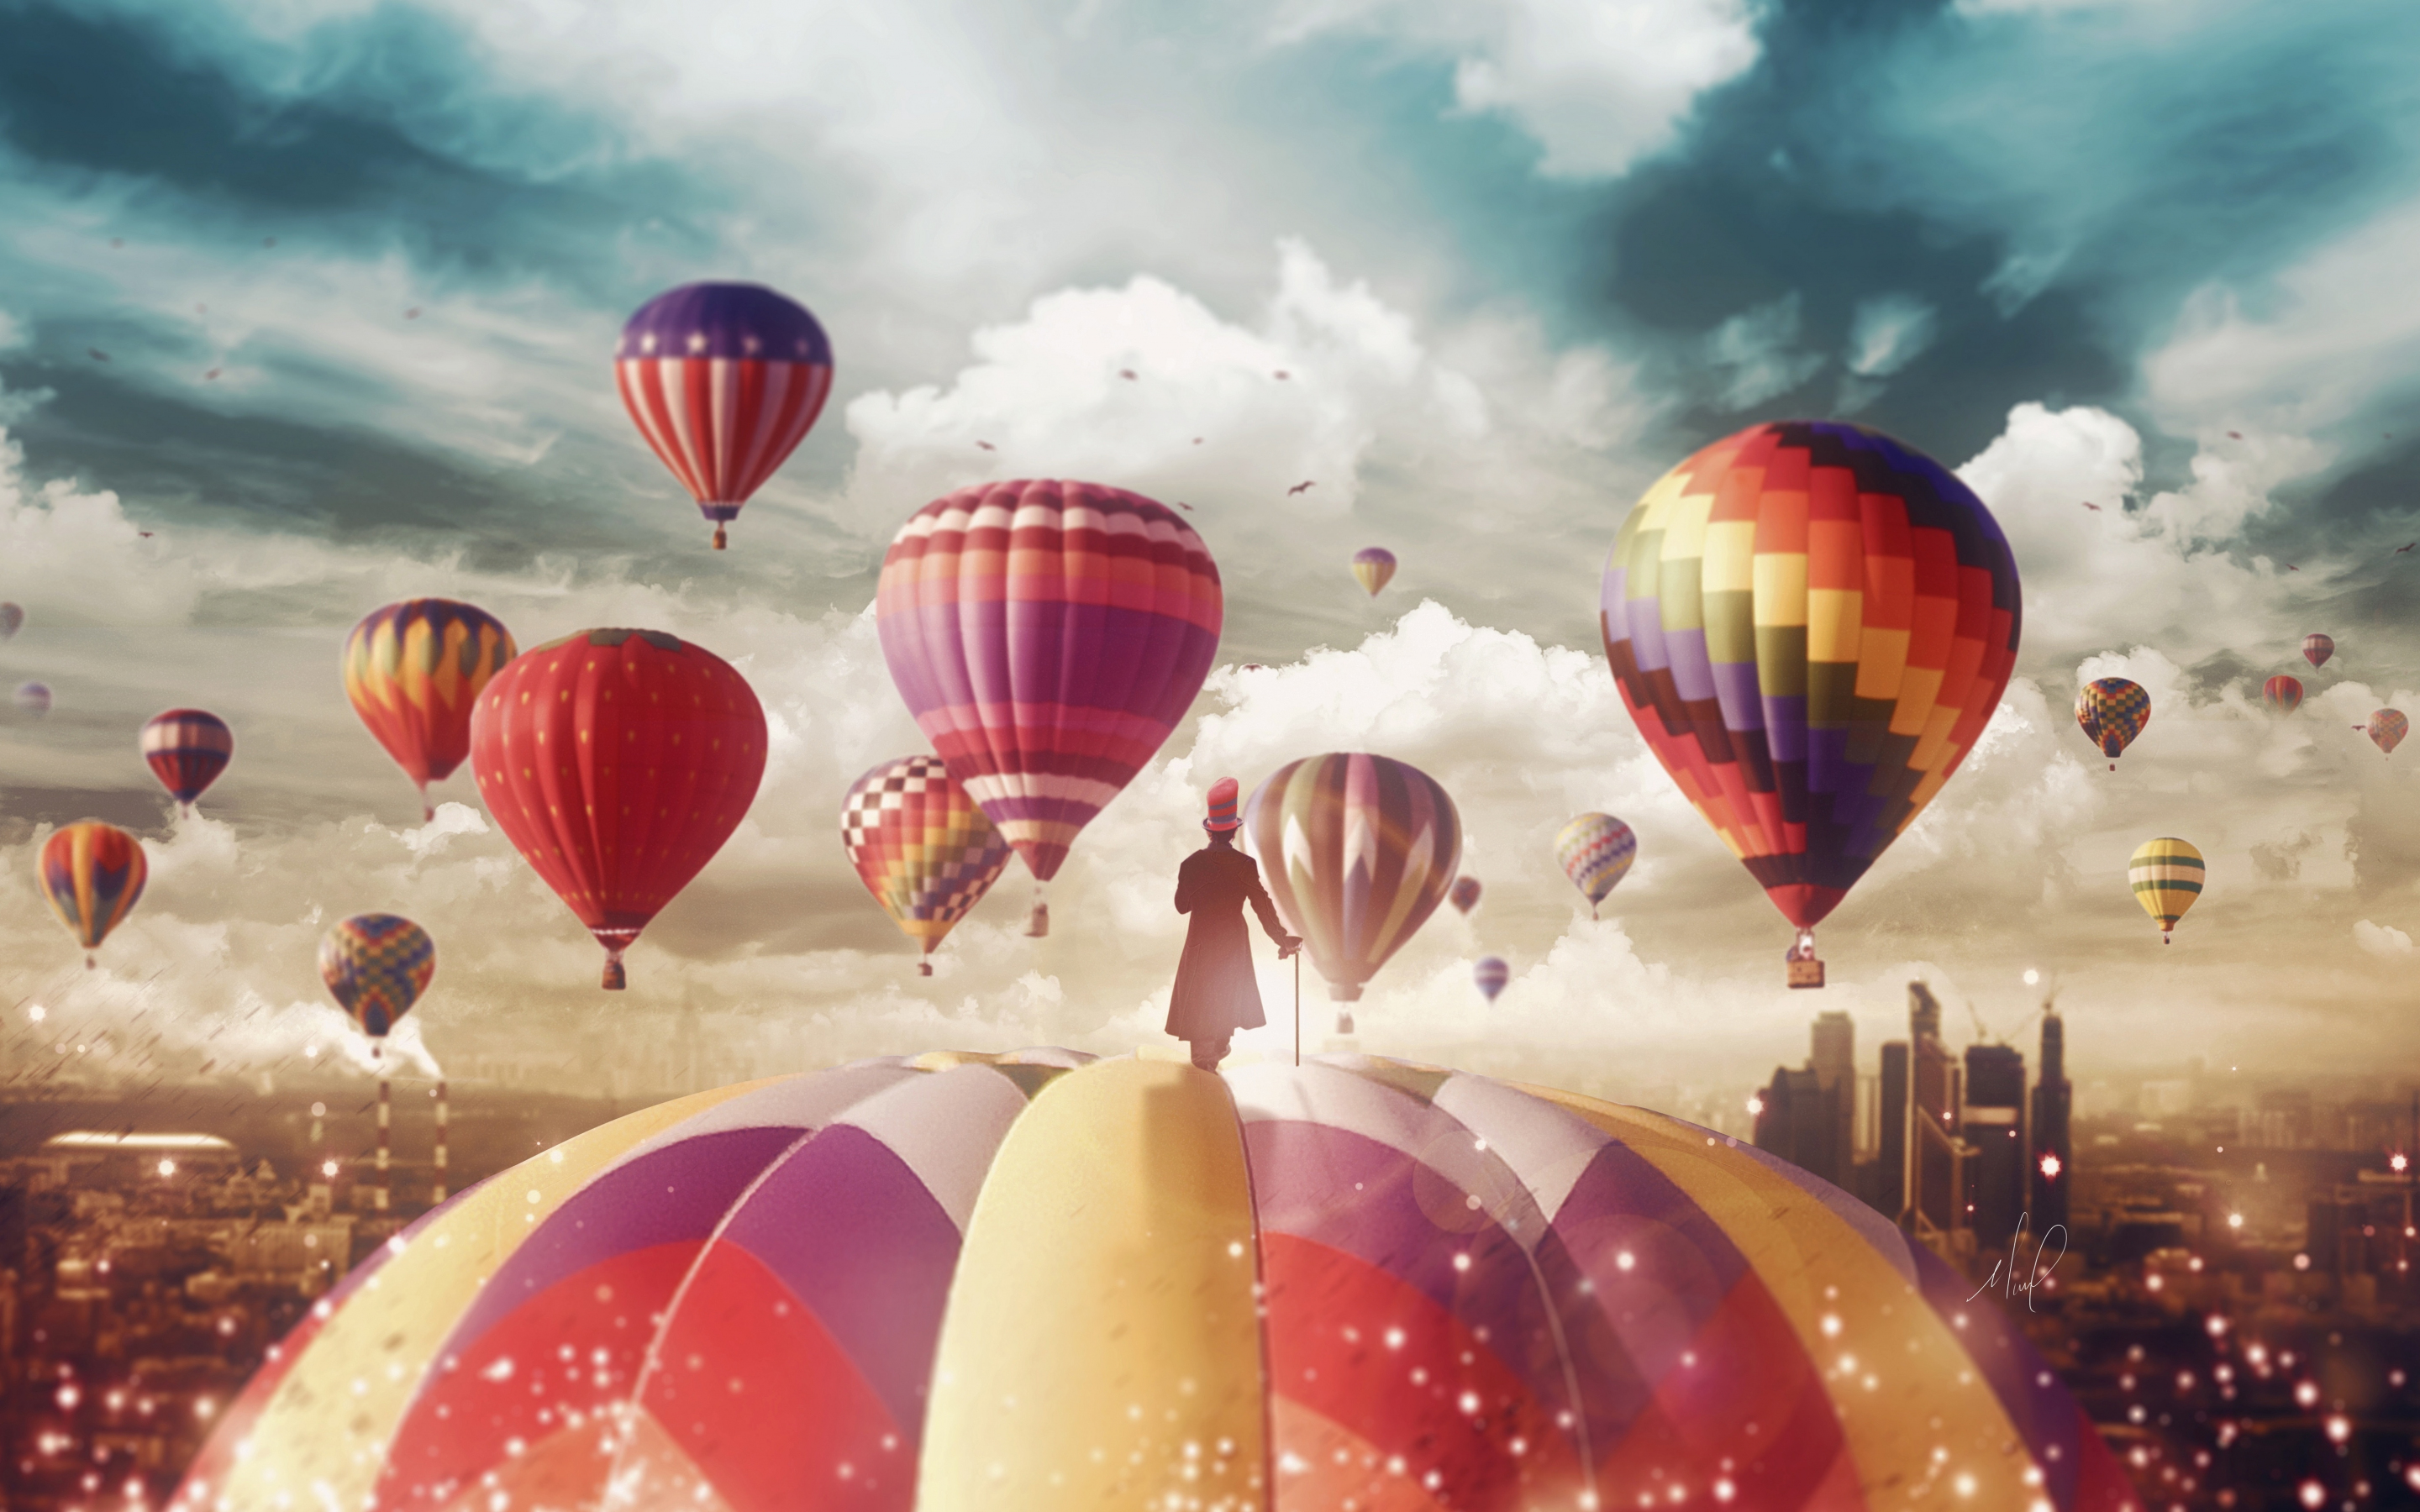 Magician, hot air balloons, ride, fantasy, surreal, 2880x1800 wallpaper